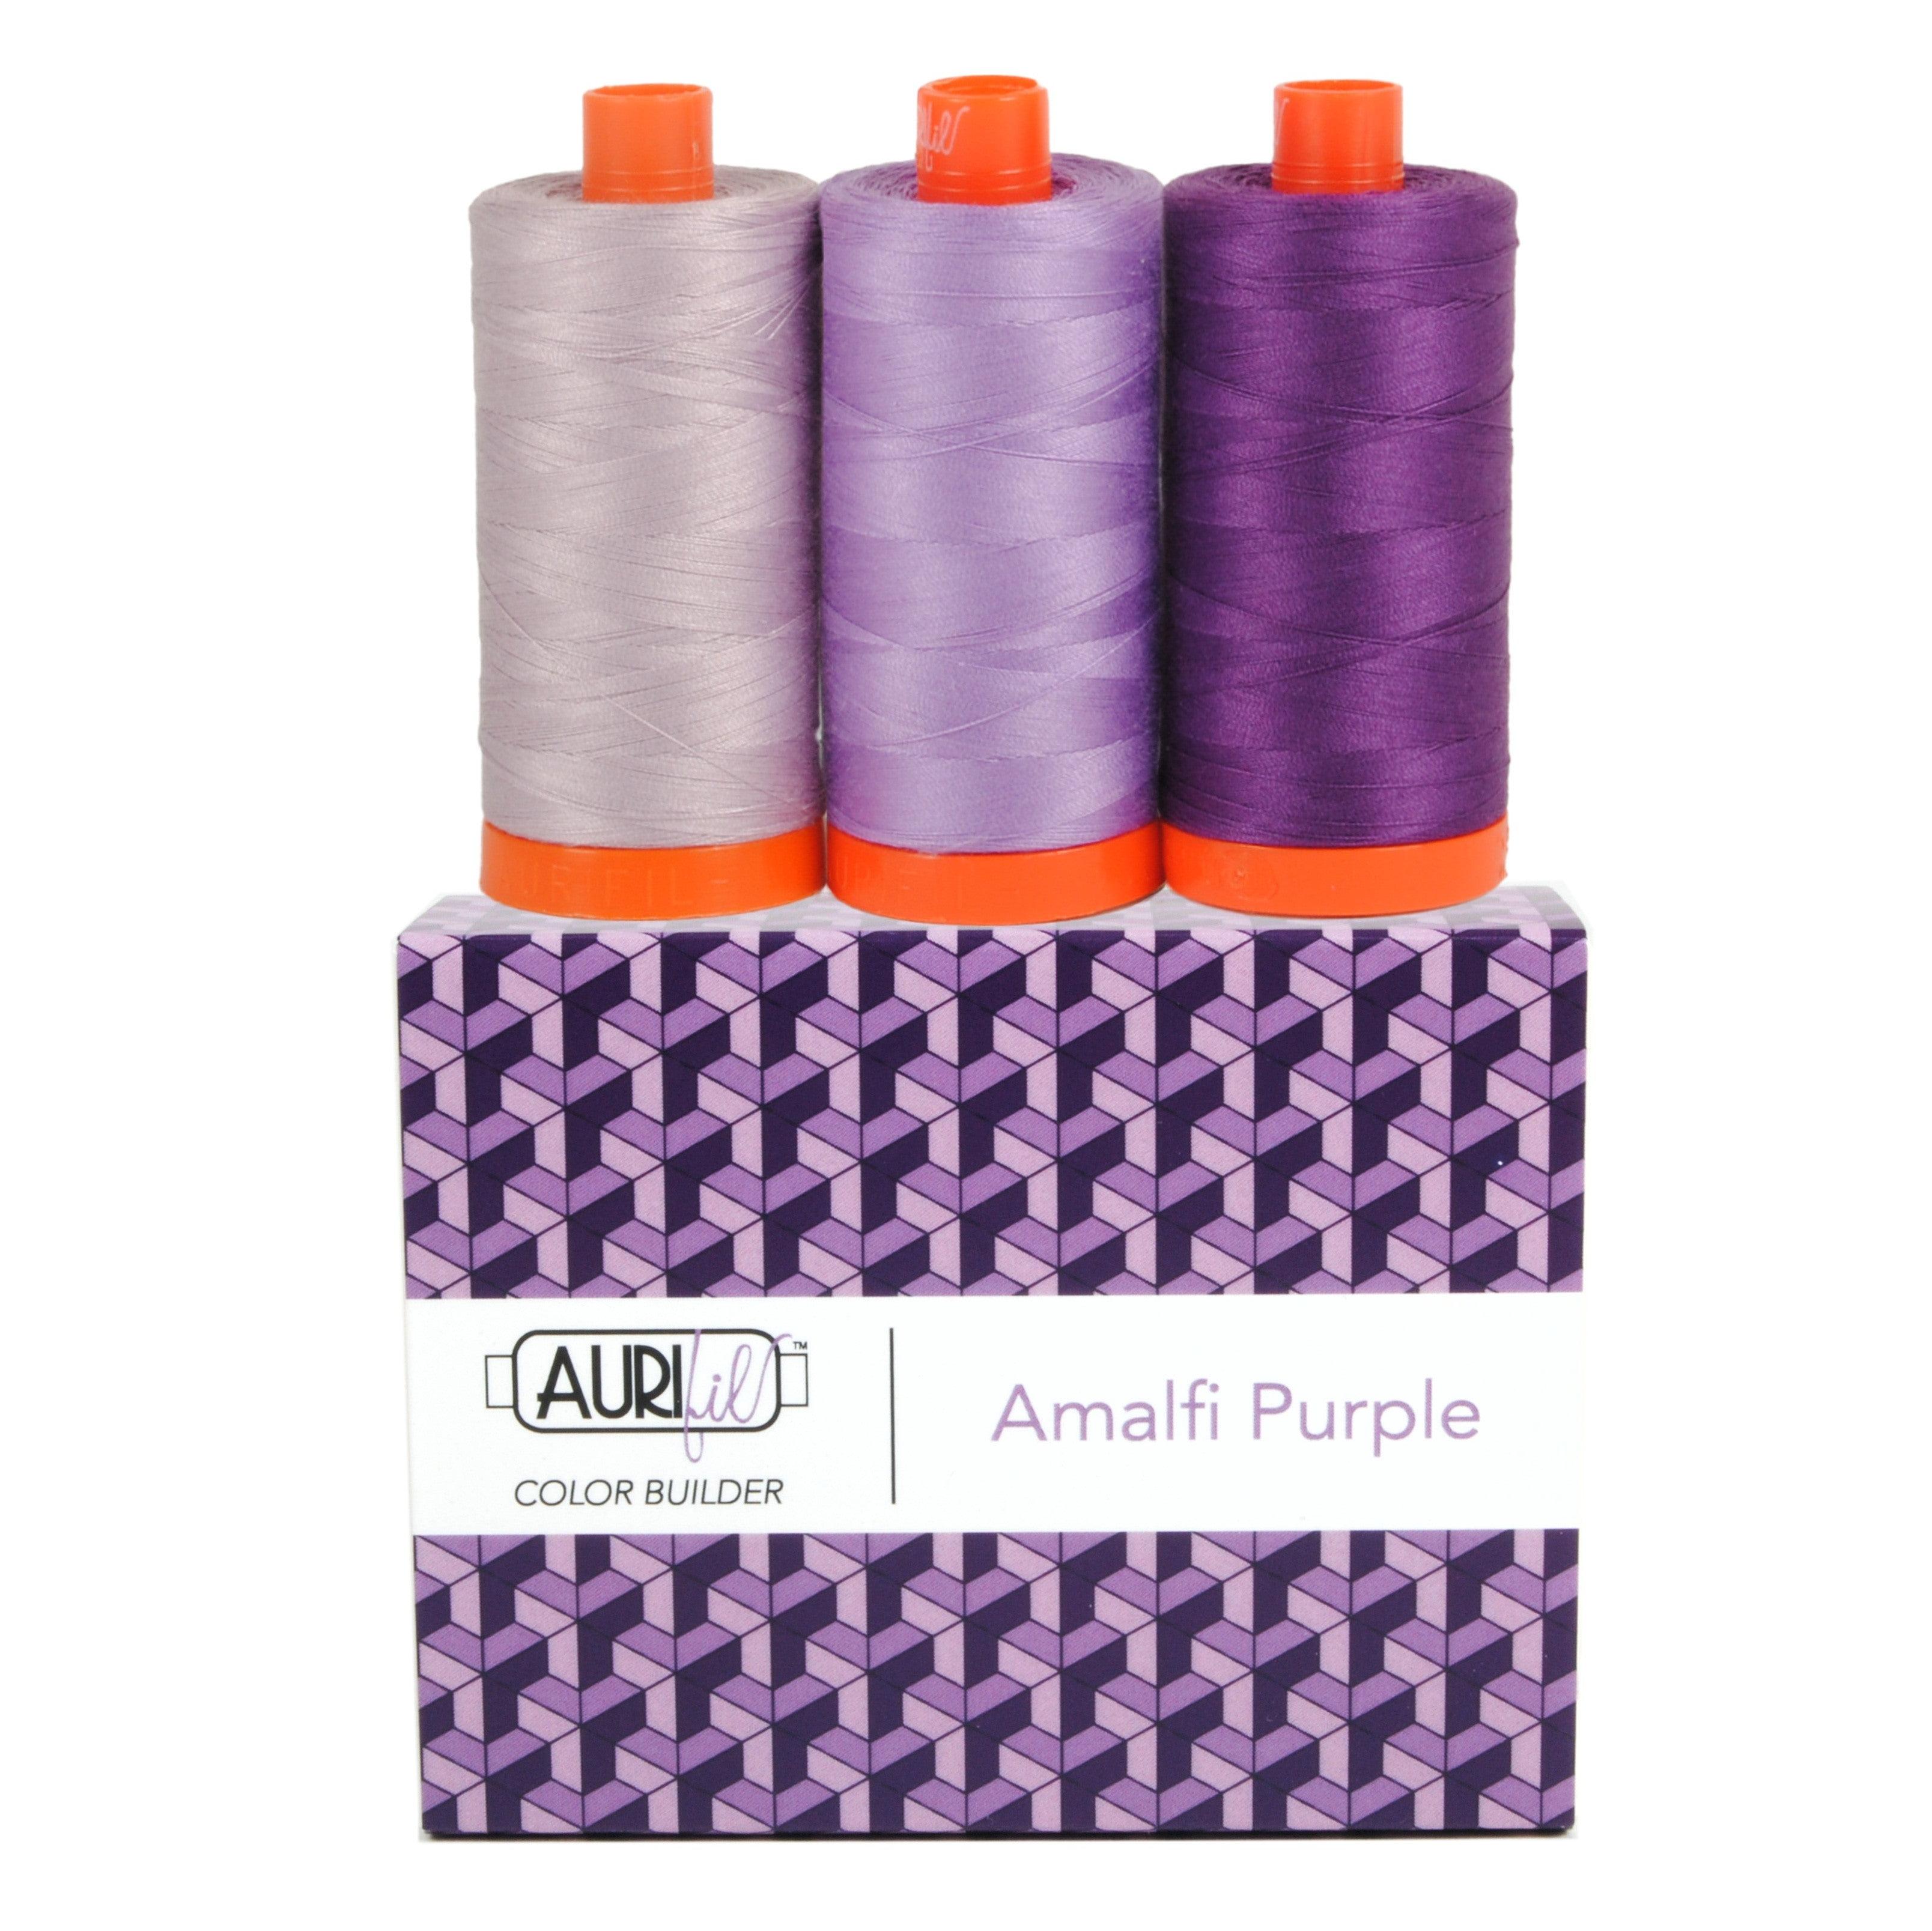 Color Builder 50wt Amalfi Purple 3 pc Set